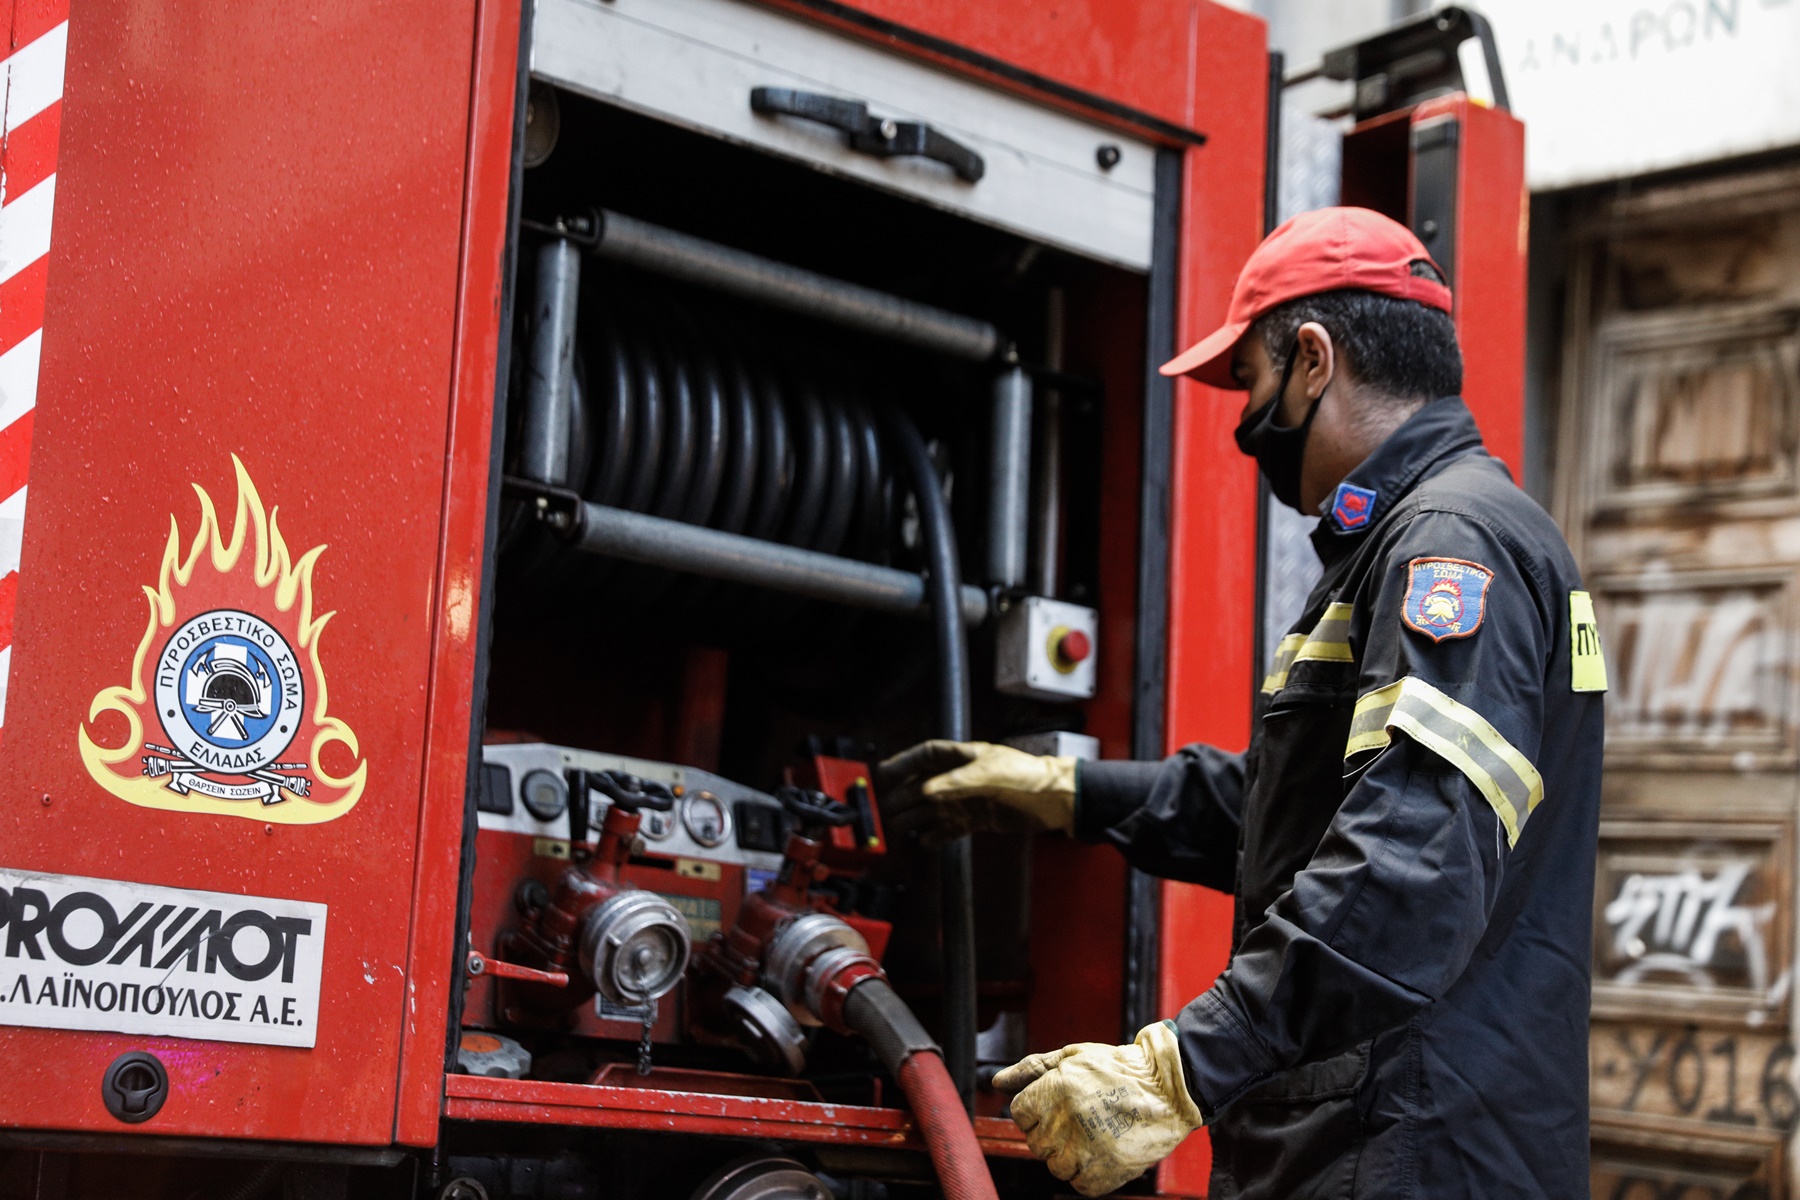 Δήμος Αιγάλεω: Άμεση κατάσβεση πυρκαγιάς σε αποθήκη ΕΠΑΛ